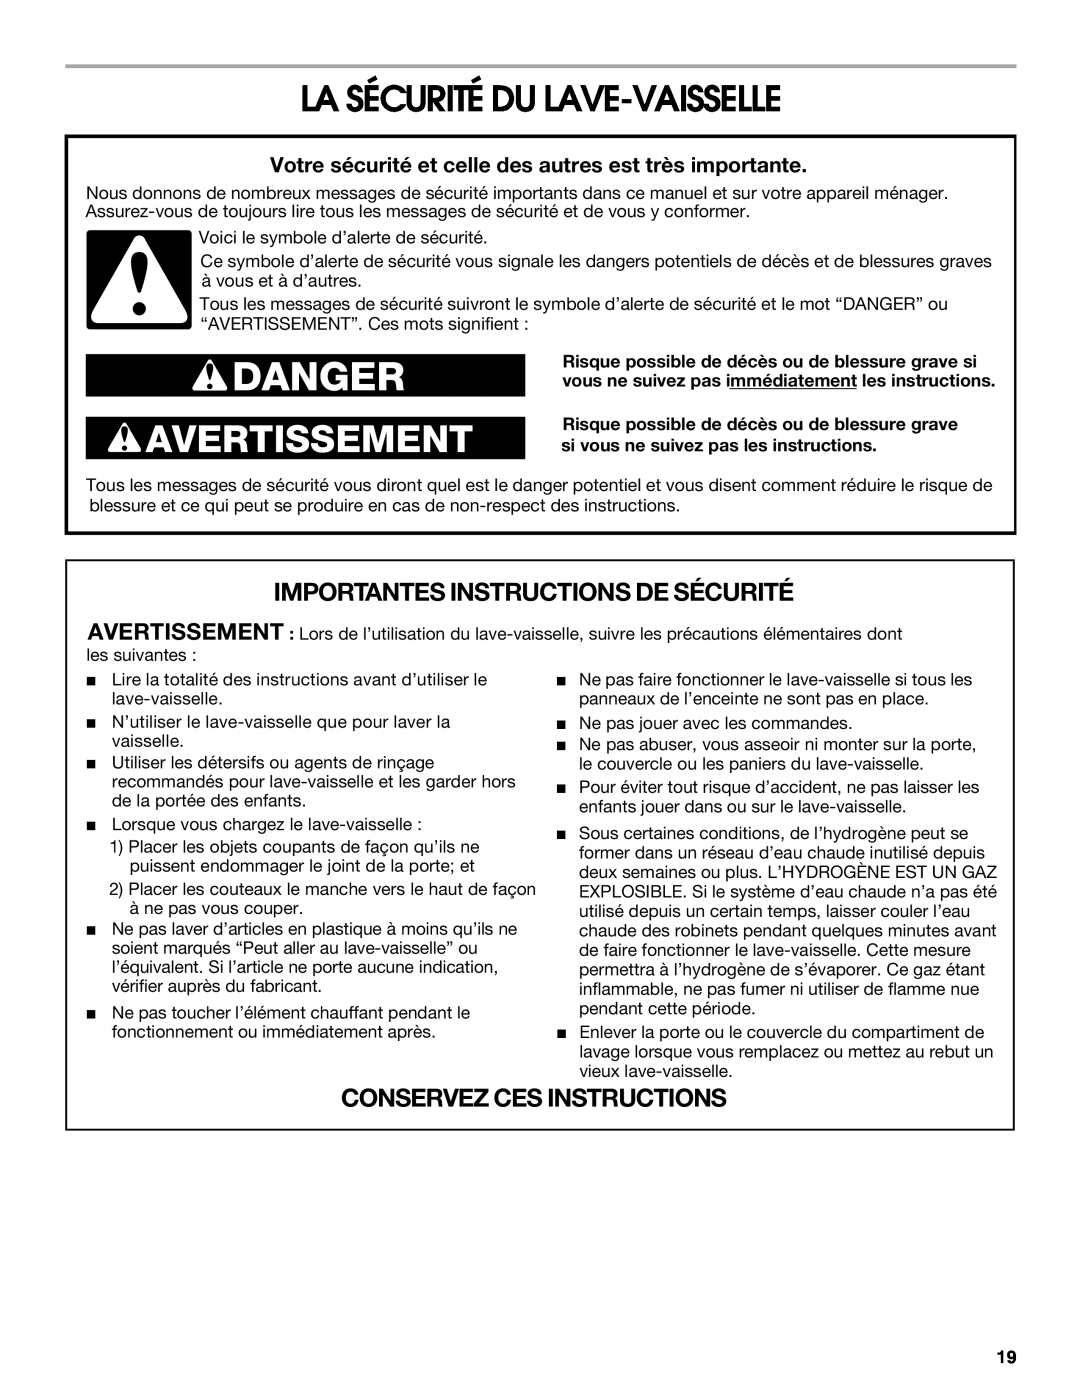 Whirlpool RUD6050R manual La Sécurité Du Lave-Vaisselle, Danger, Avertissement, Importantes Instructions De Sécurité 